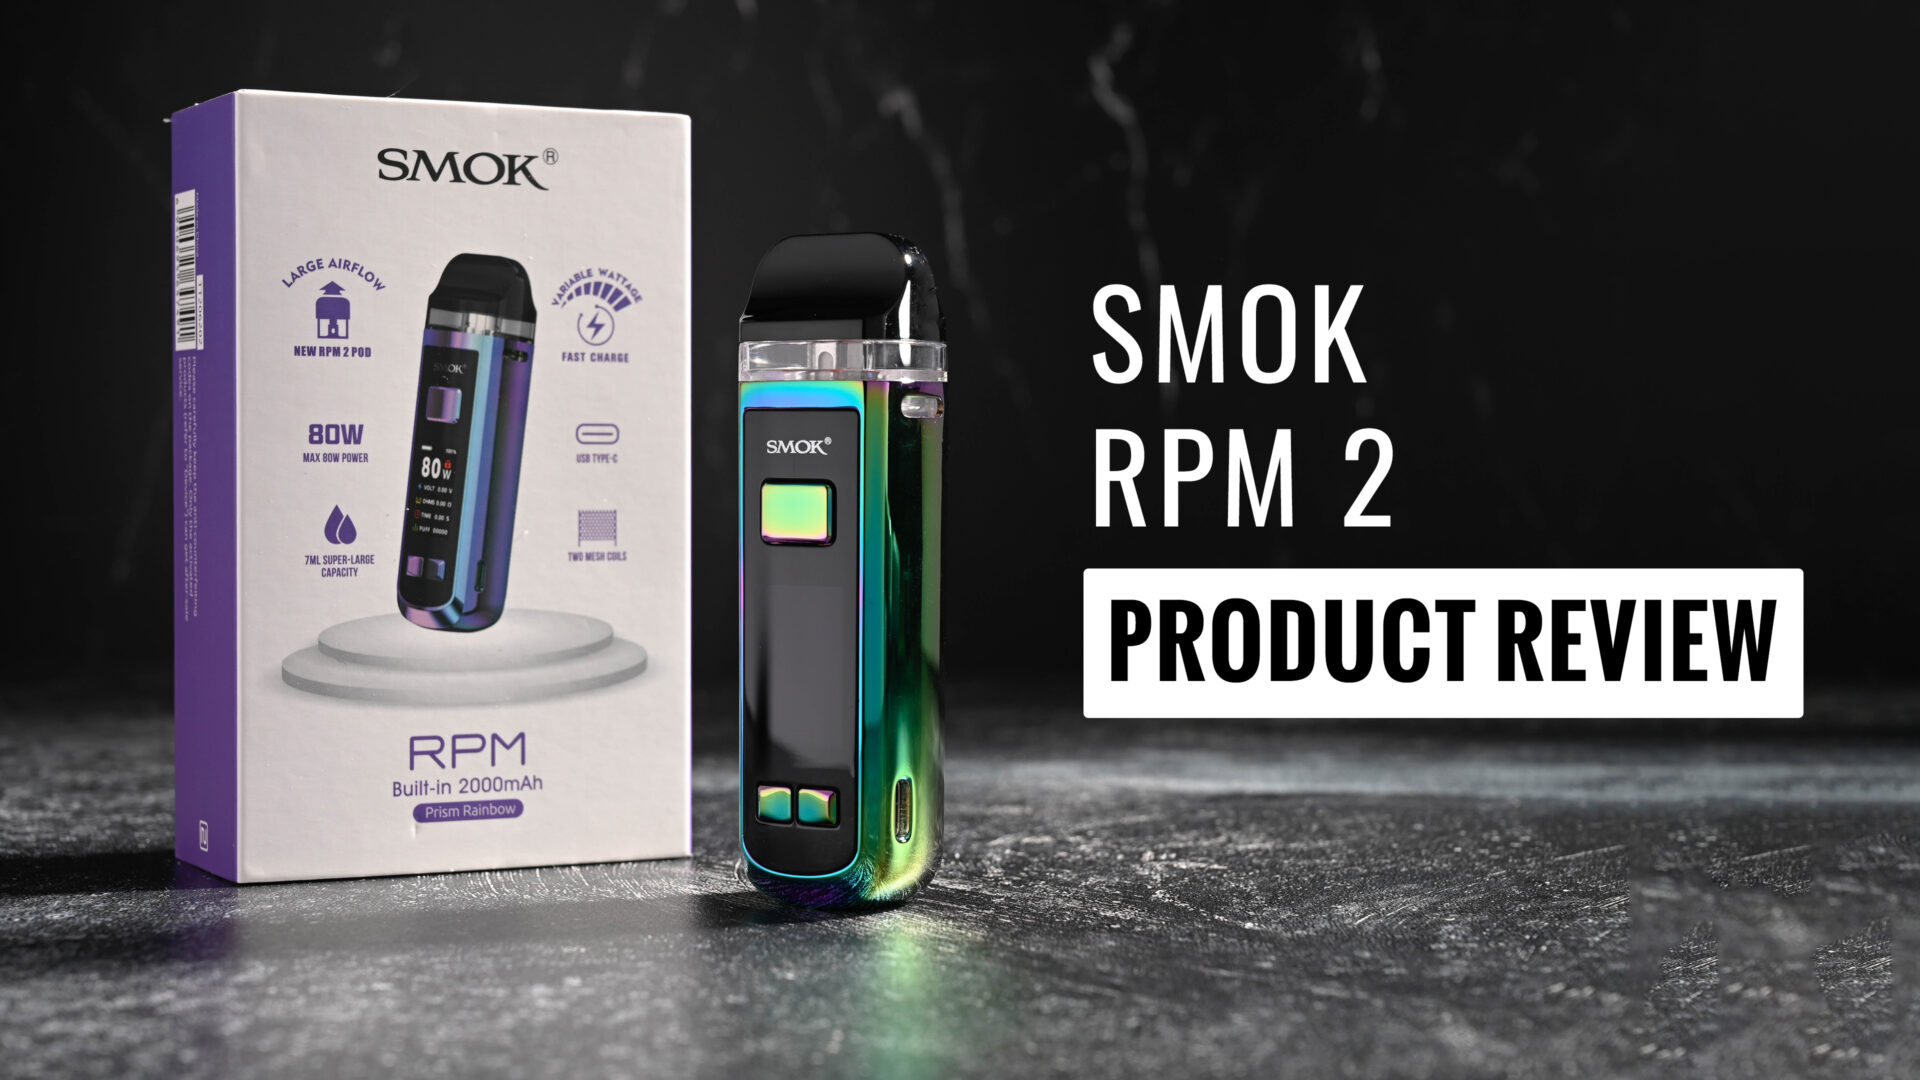 SMOK RPM 2